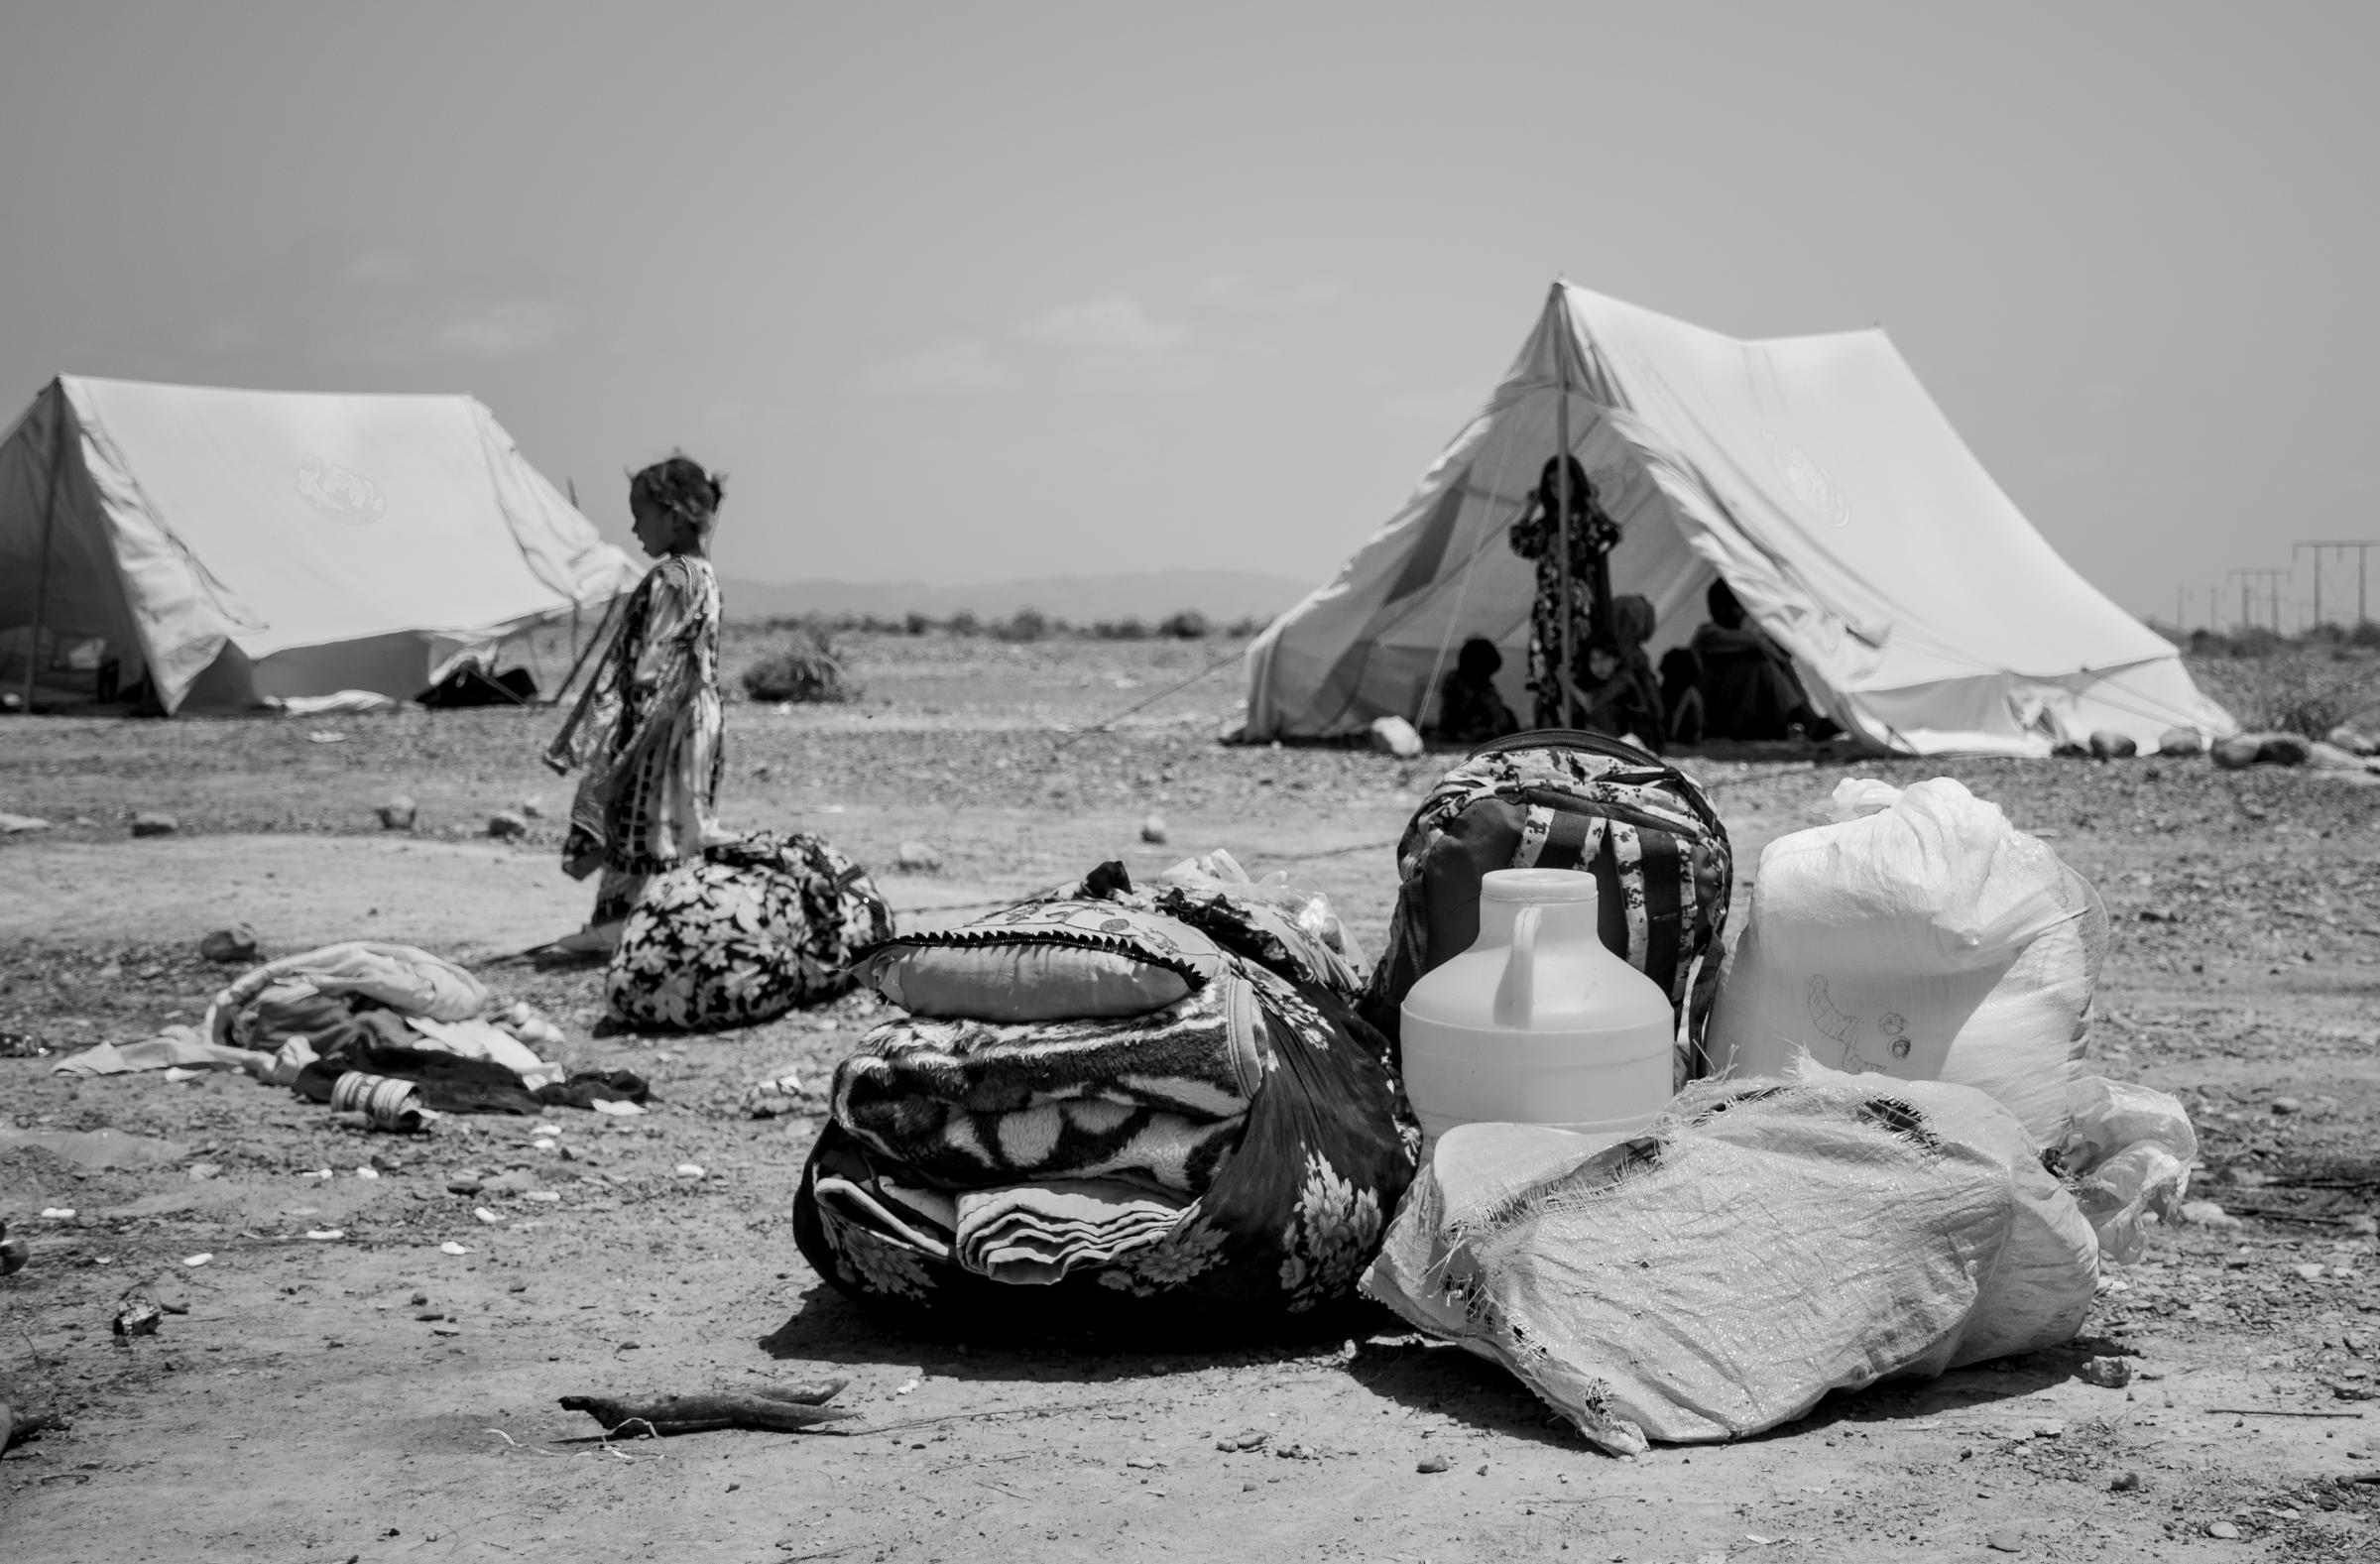 Balochistan Relief Camp